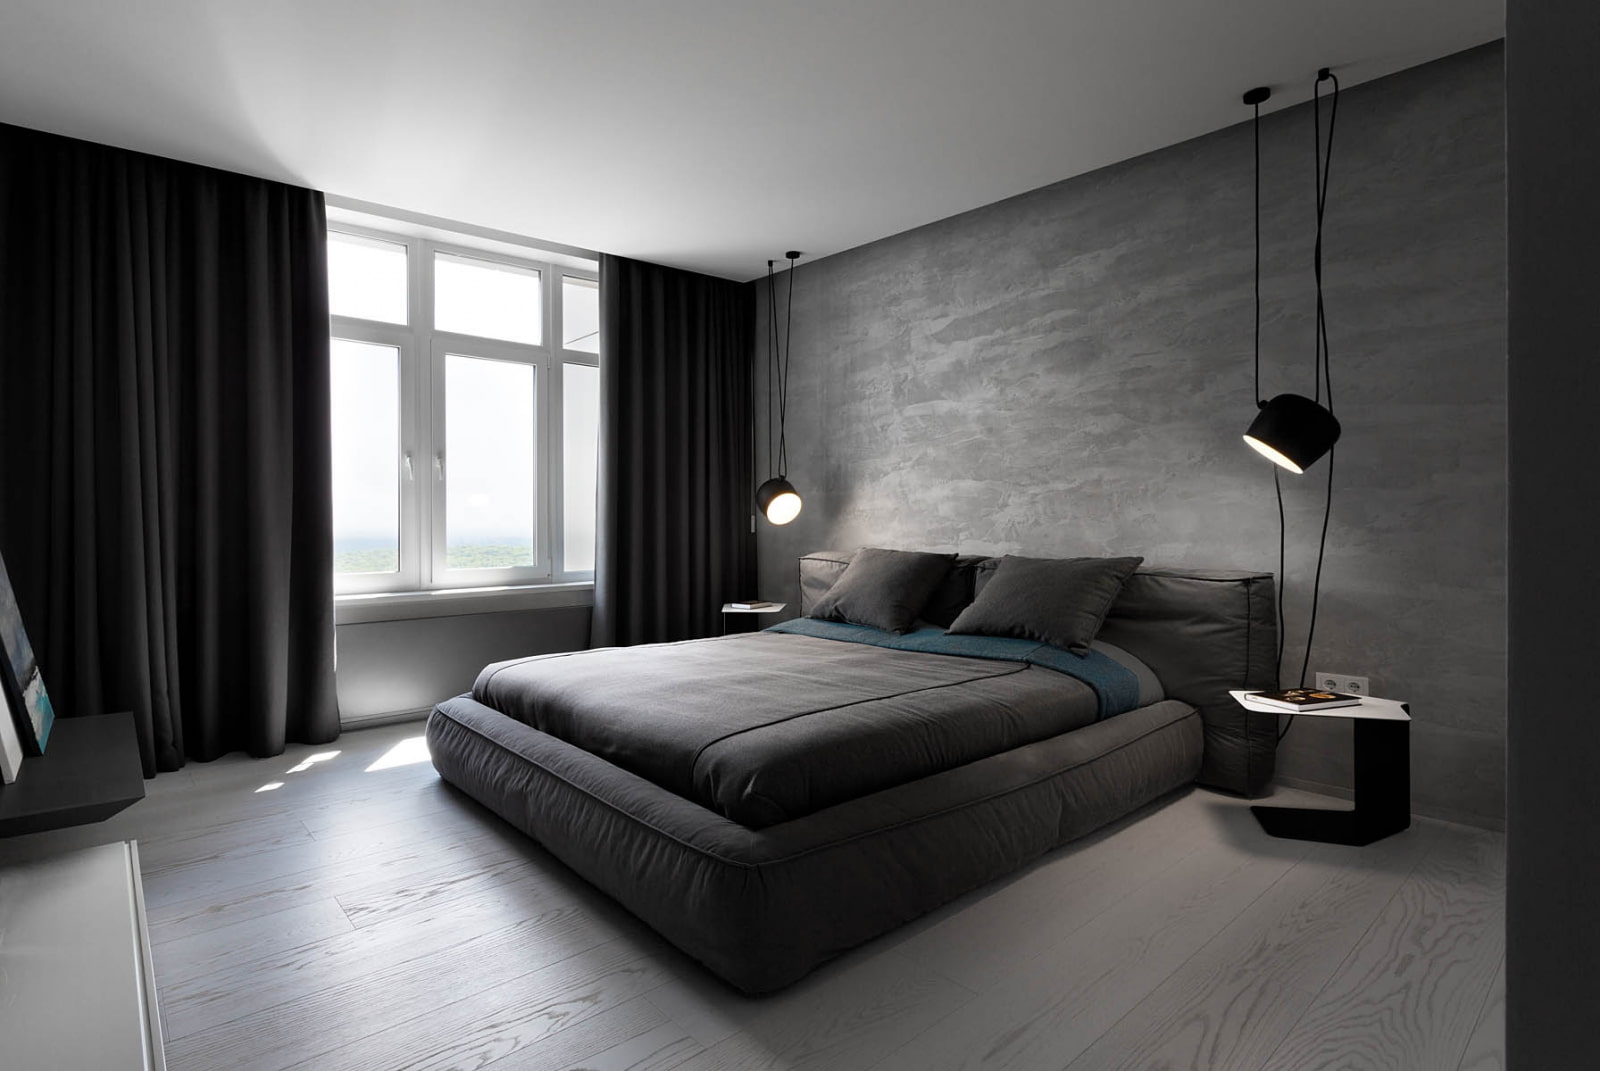 13 удивительных вариантов декора для спальни, которые преобразят ваш интерьер